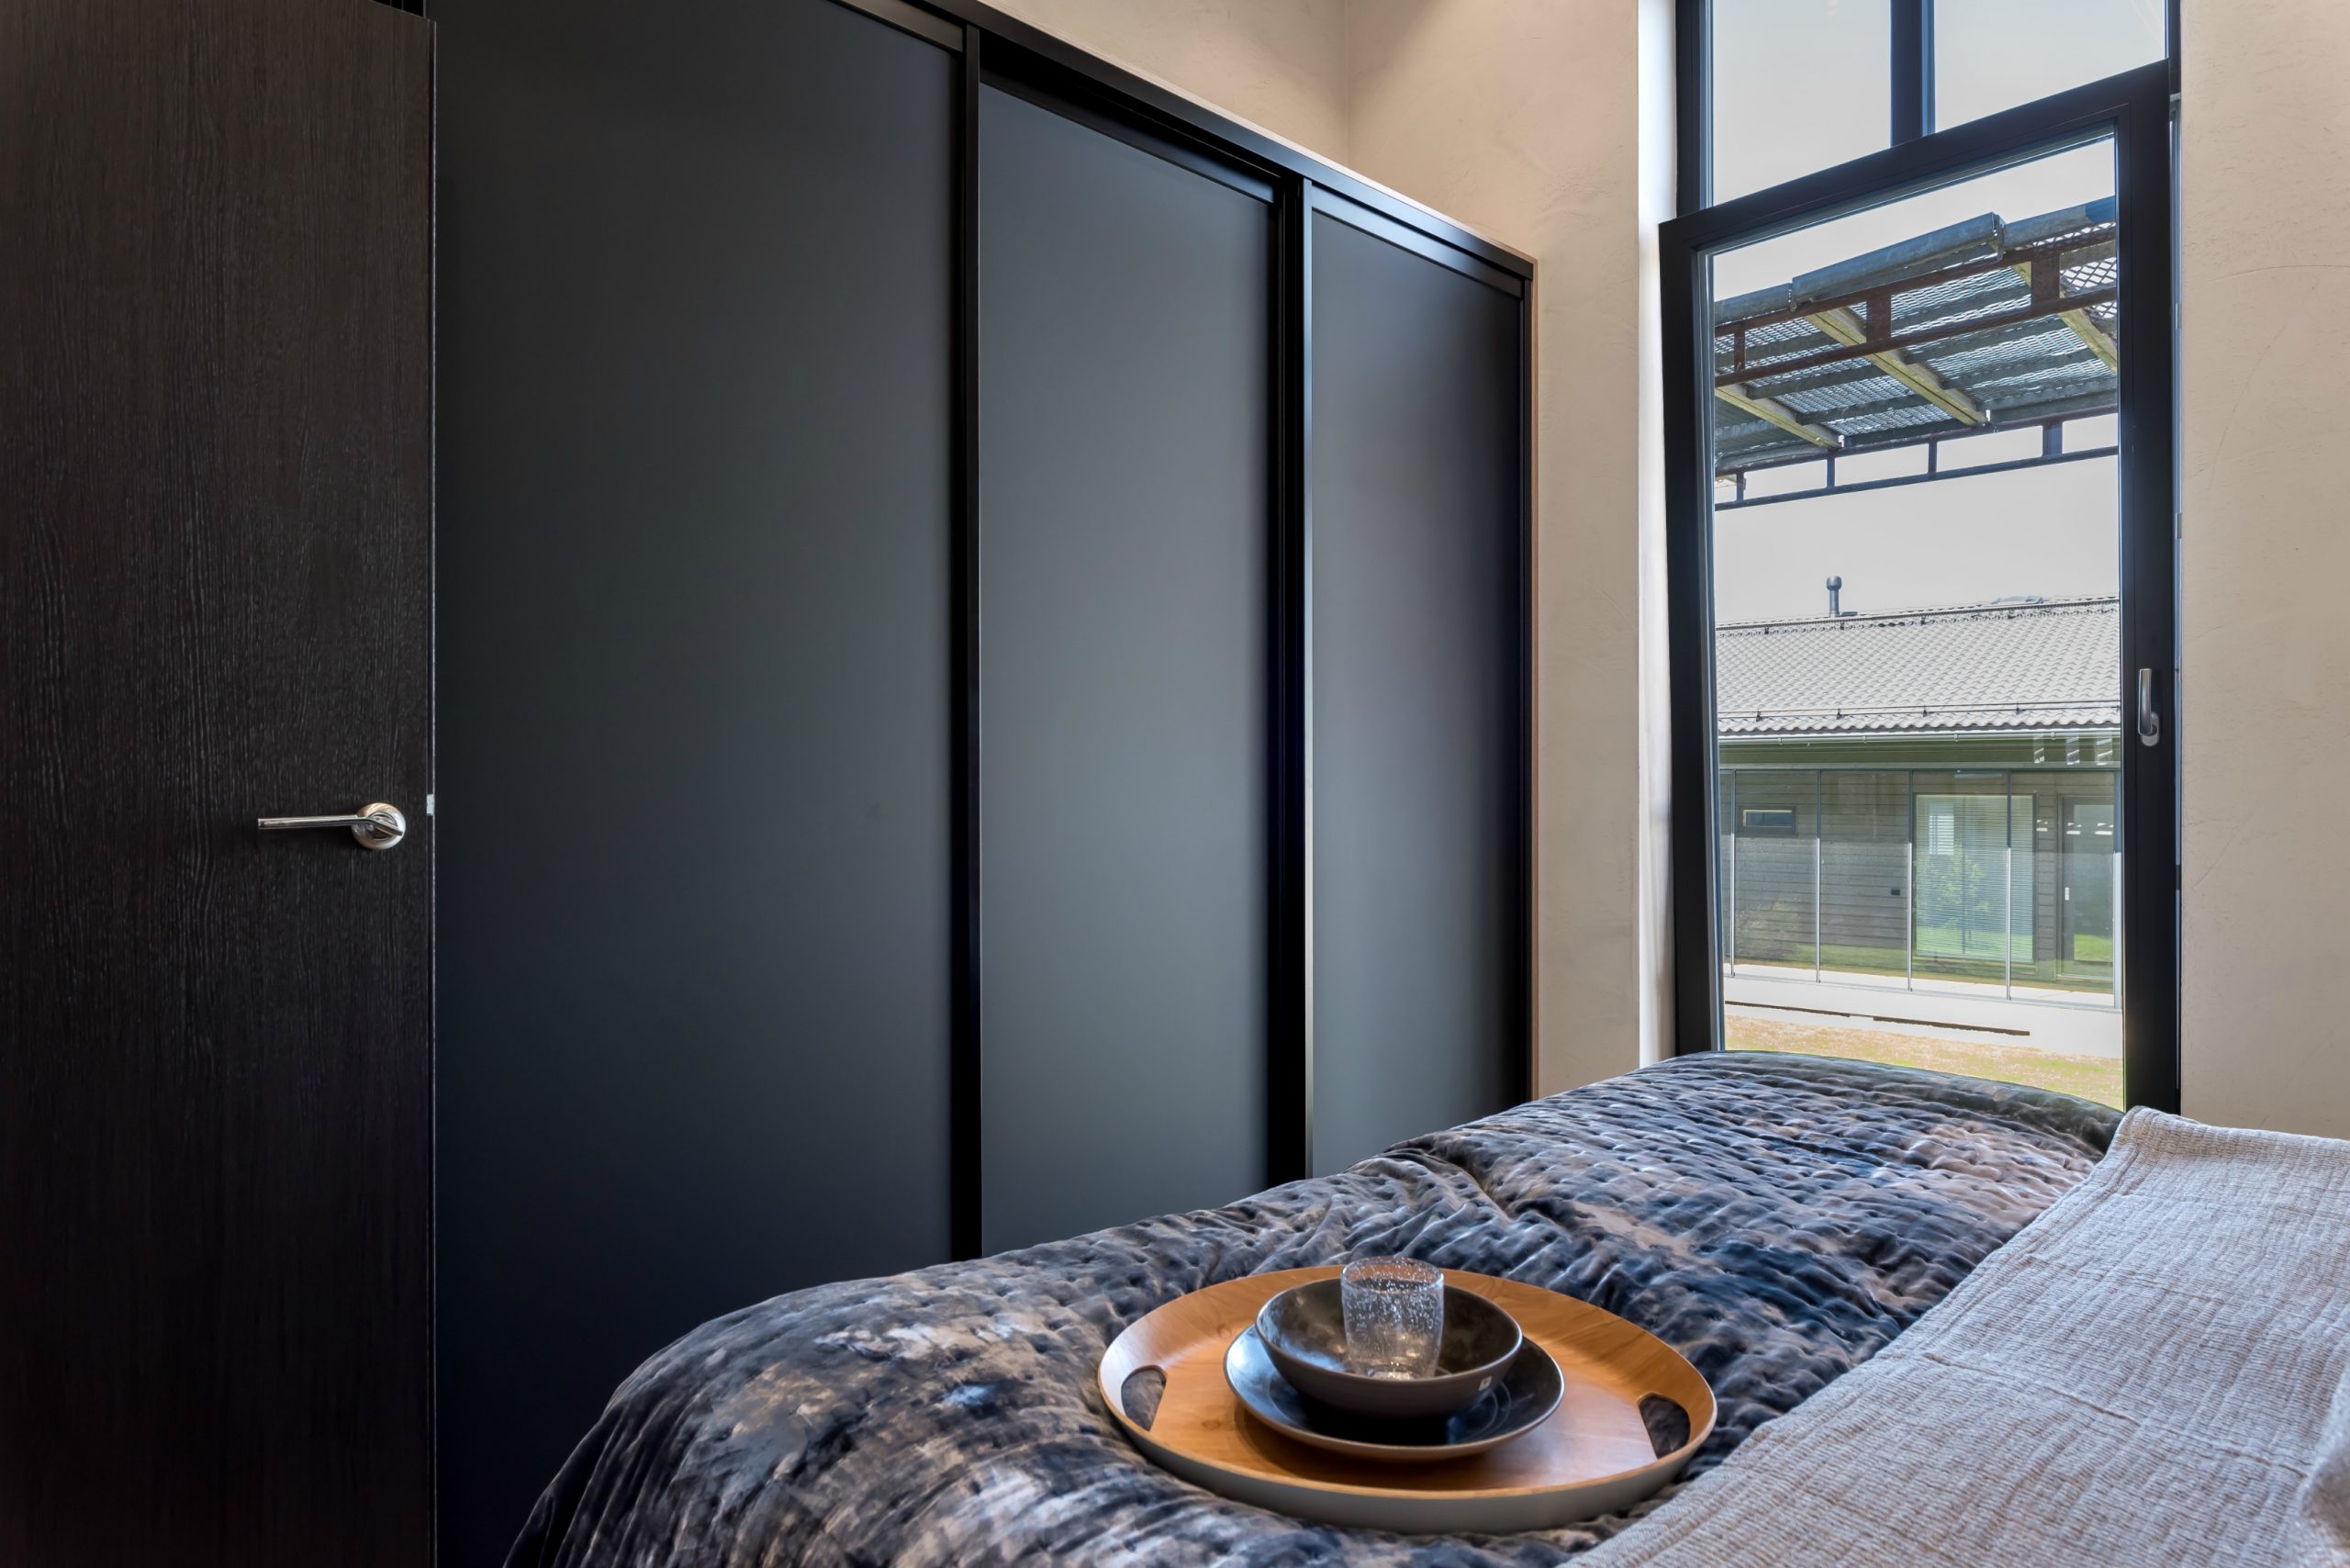 Asuntomessut 2020 kohde 20 Villa Lakka makuuhuoneen sisustus Mirror Line liukuovet. Kuva Tuomo Parkkila